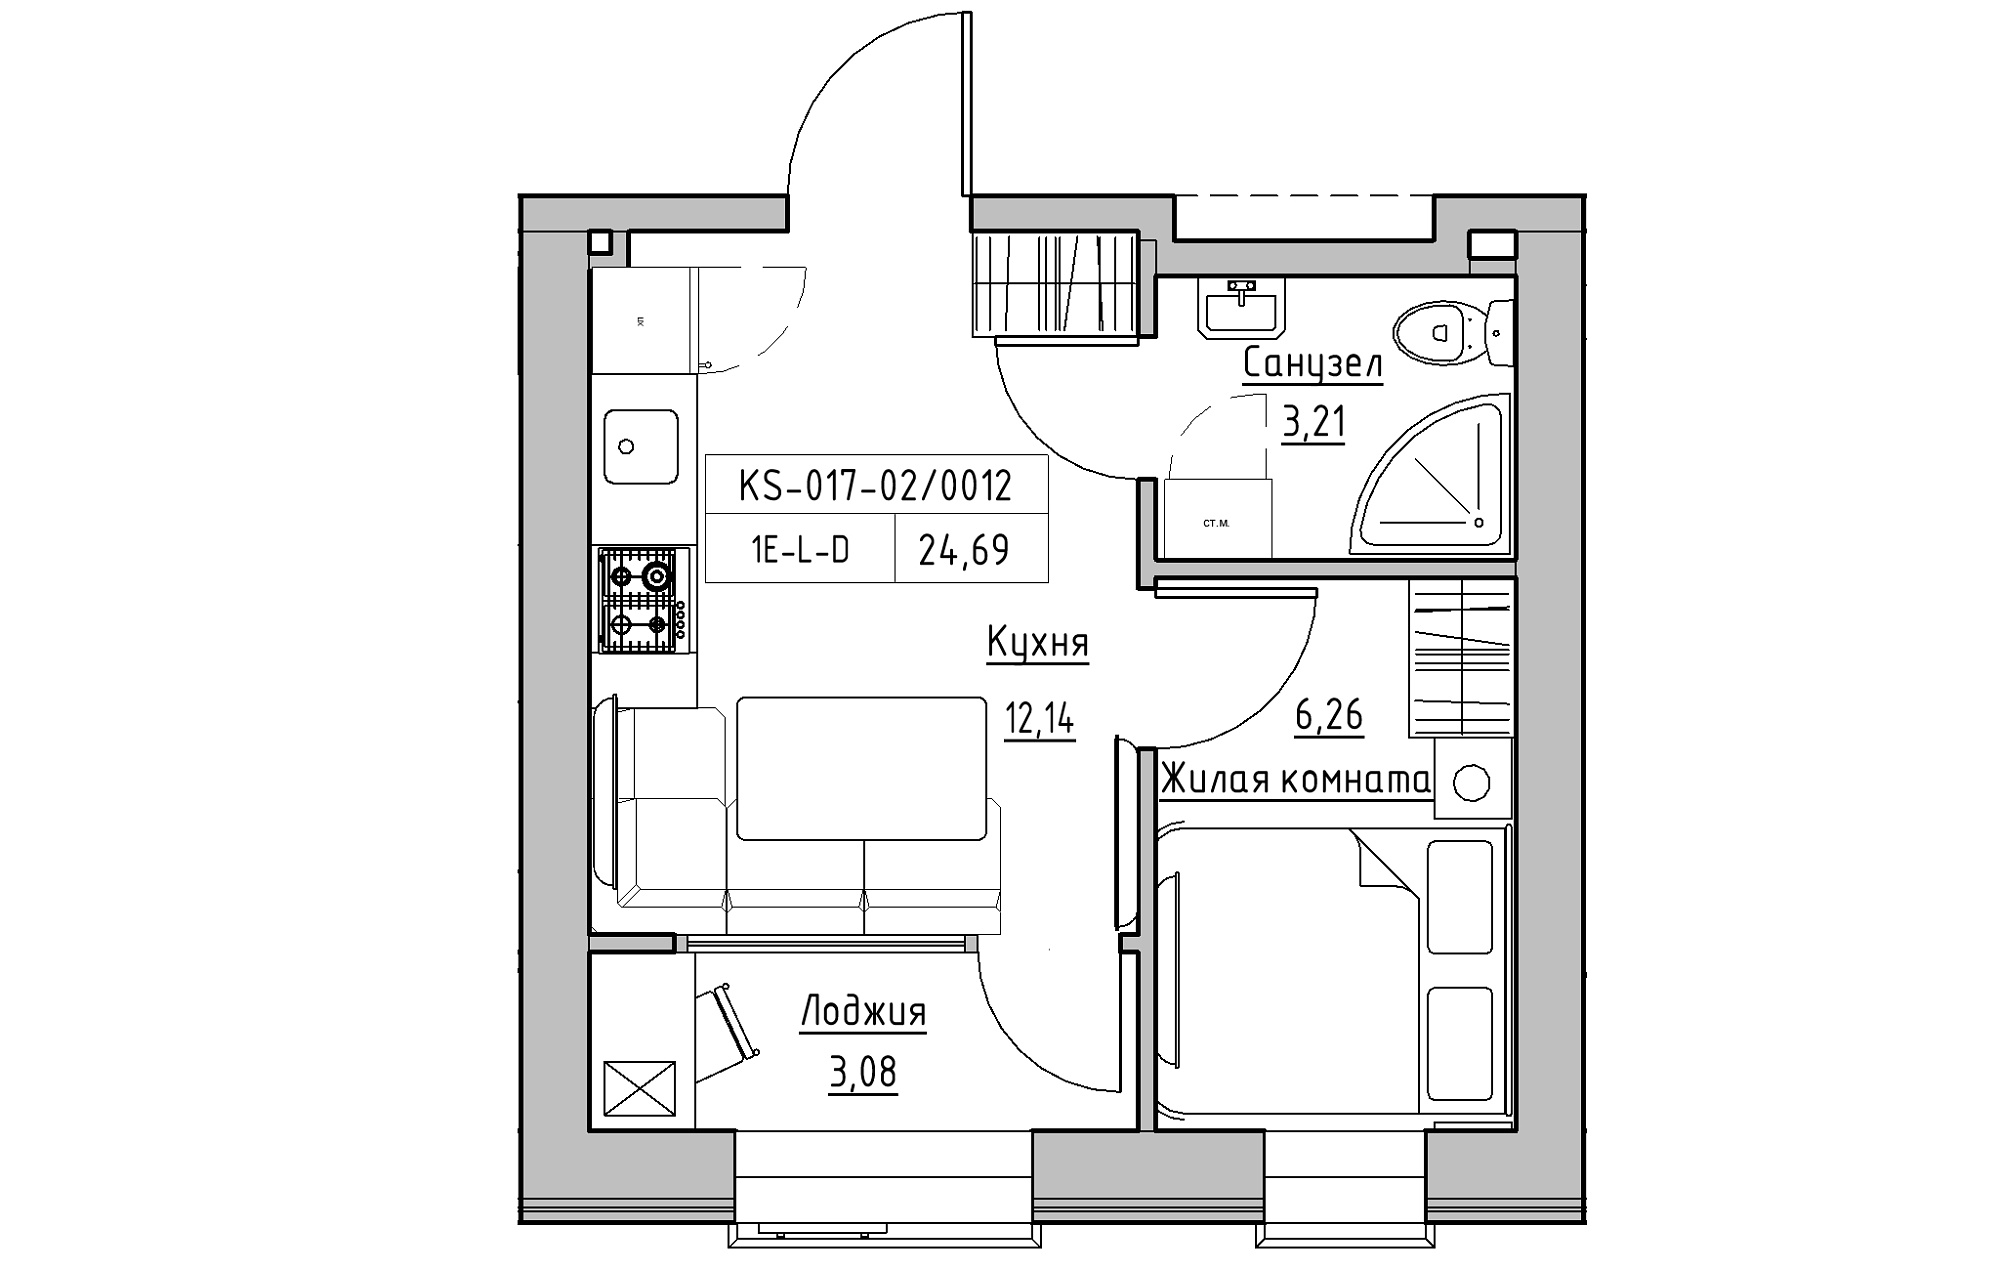 Планування 1-к квартира площею 24.69м2, KS-017-02/0012.